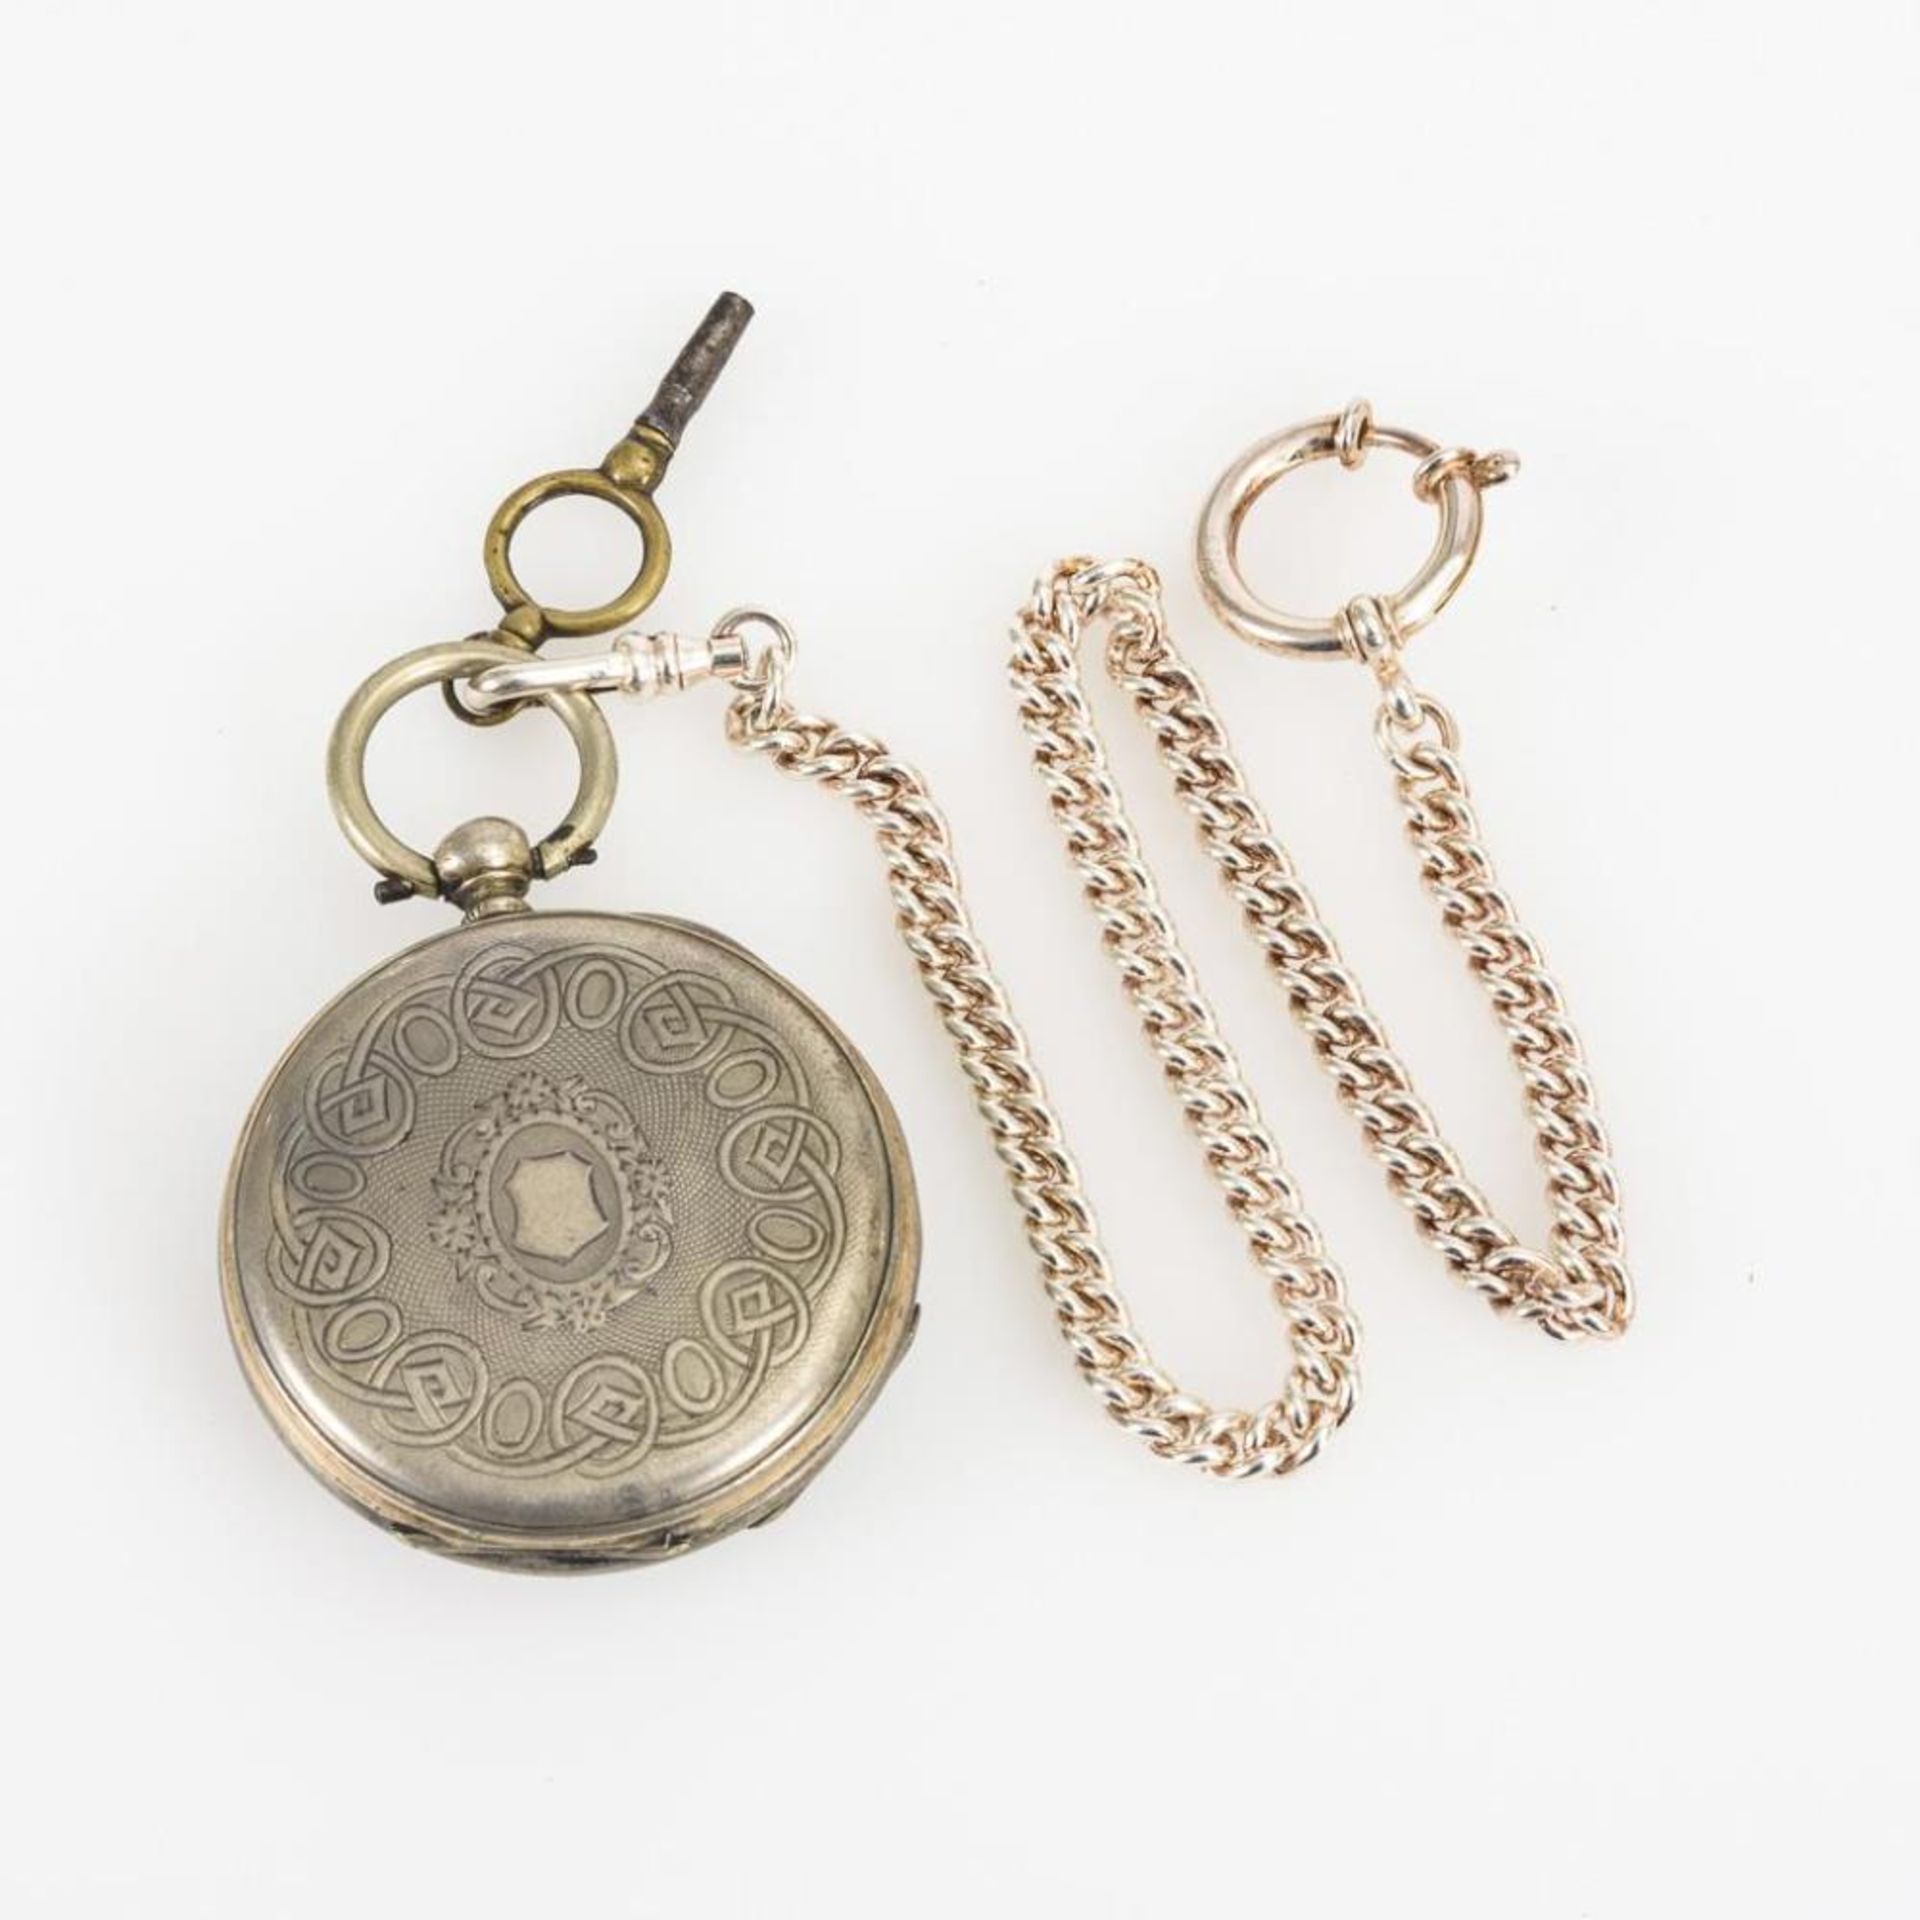 Silberne Taschenuhr an silberner Uhrenkette. - Bild 2 aus 3